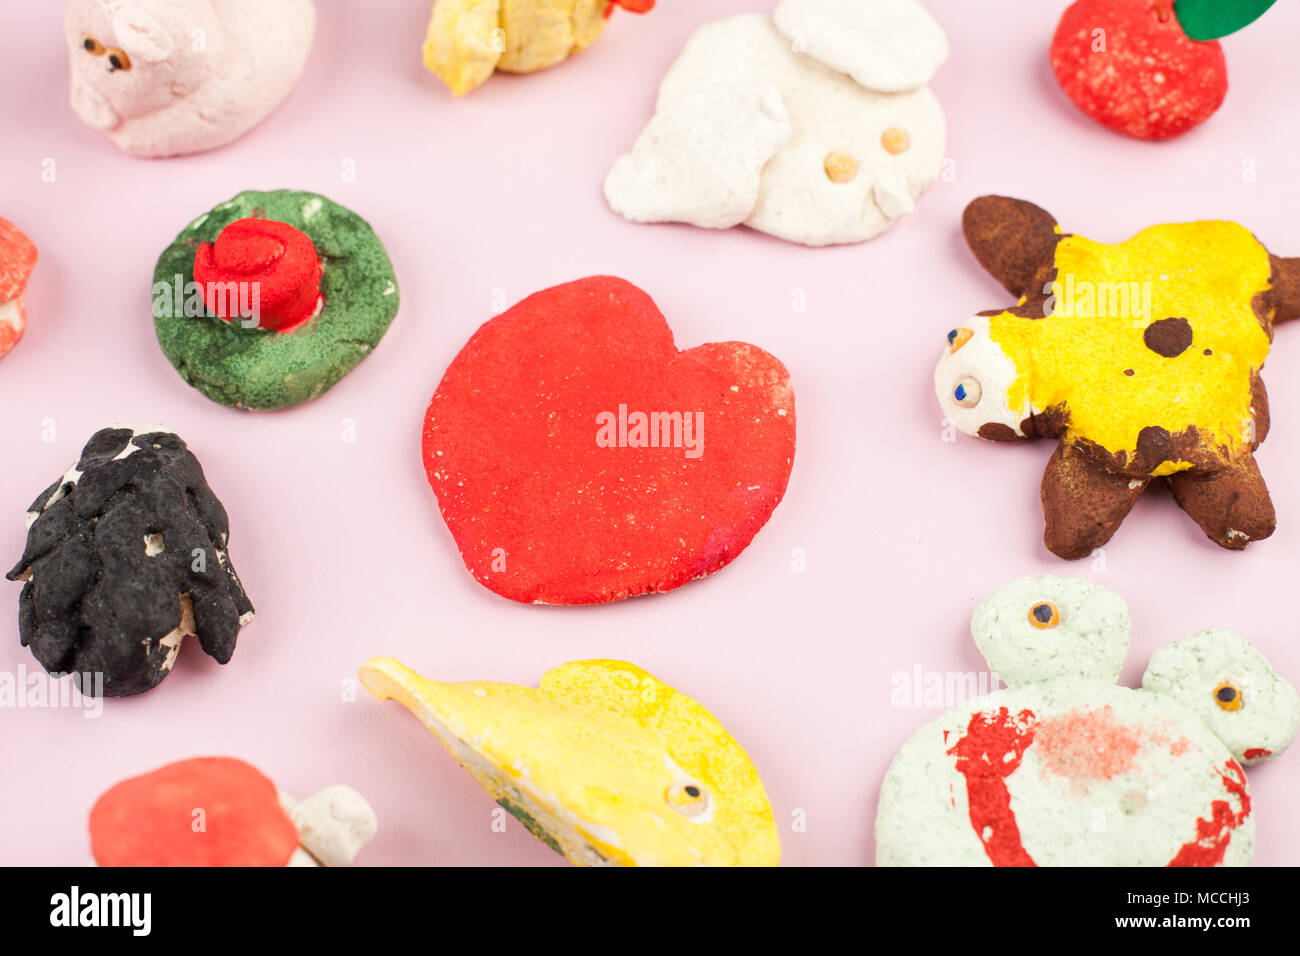 Kinder Kunsthandwerk aus gesalzenem Teig - verschiedene Tiere, Herzen, Blumen mit Farben bemalt Stockfoto